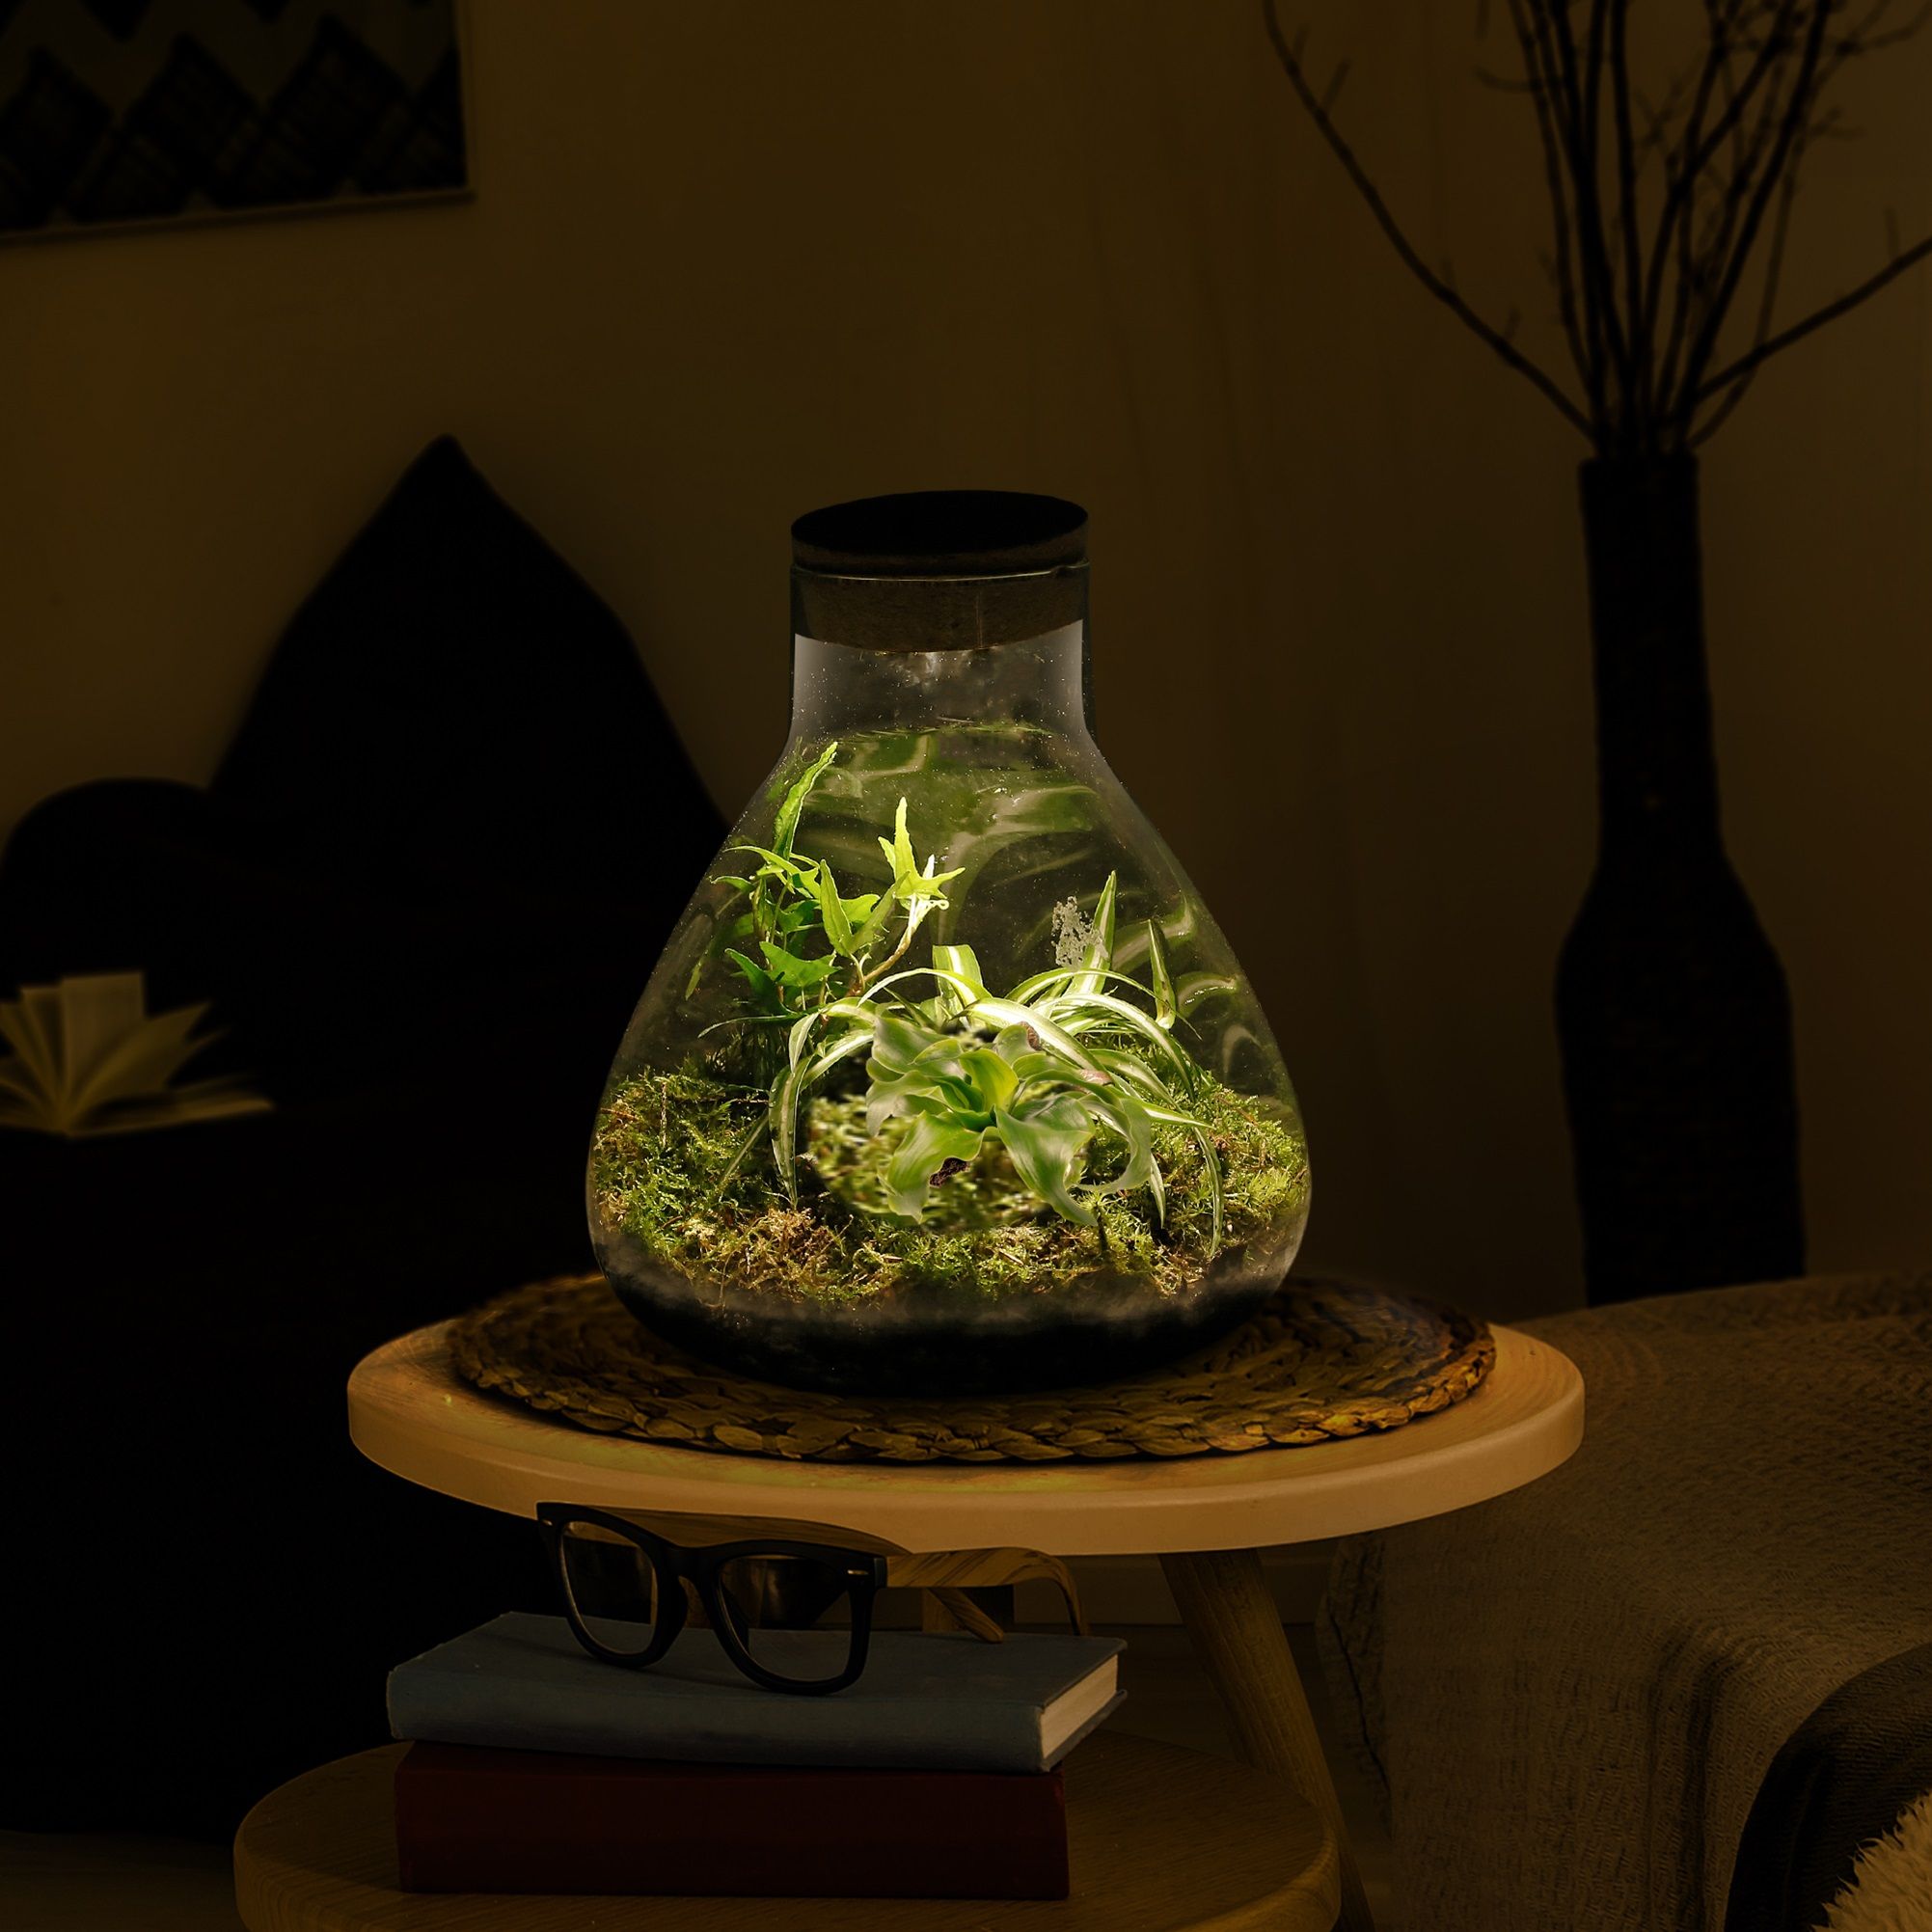 Pflanzen-im-Glas-Topf-Dschungel-Biosphäre-mit-Lampe-Piramid-1